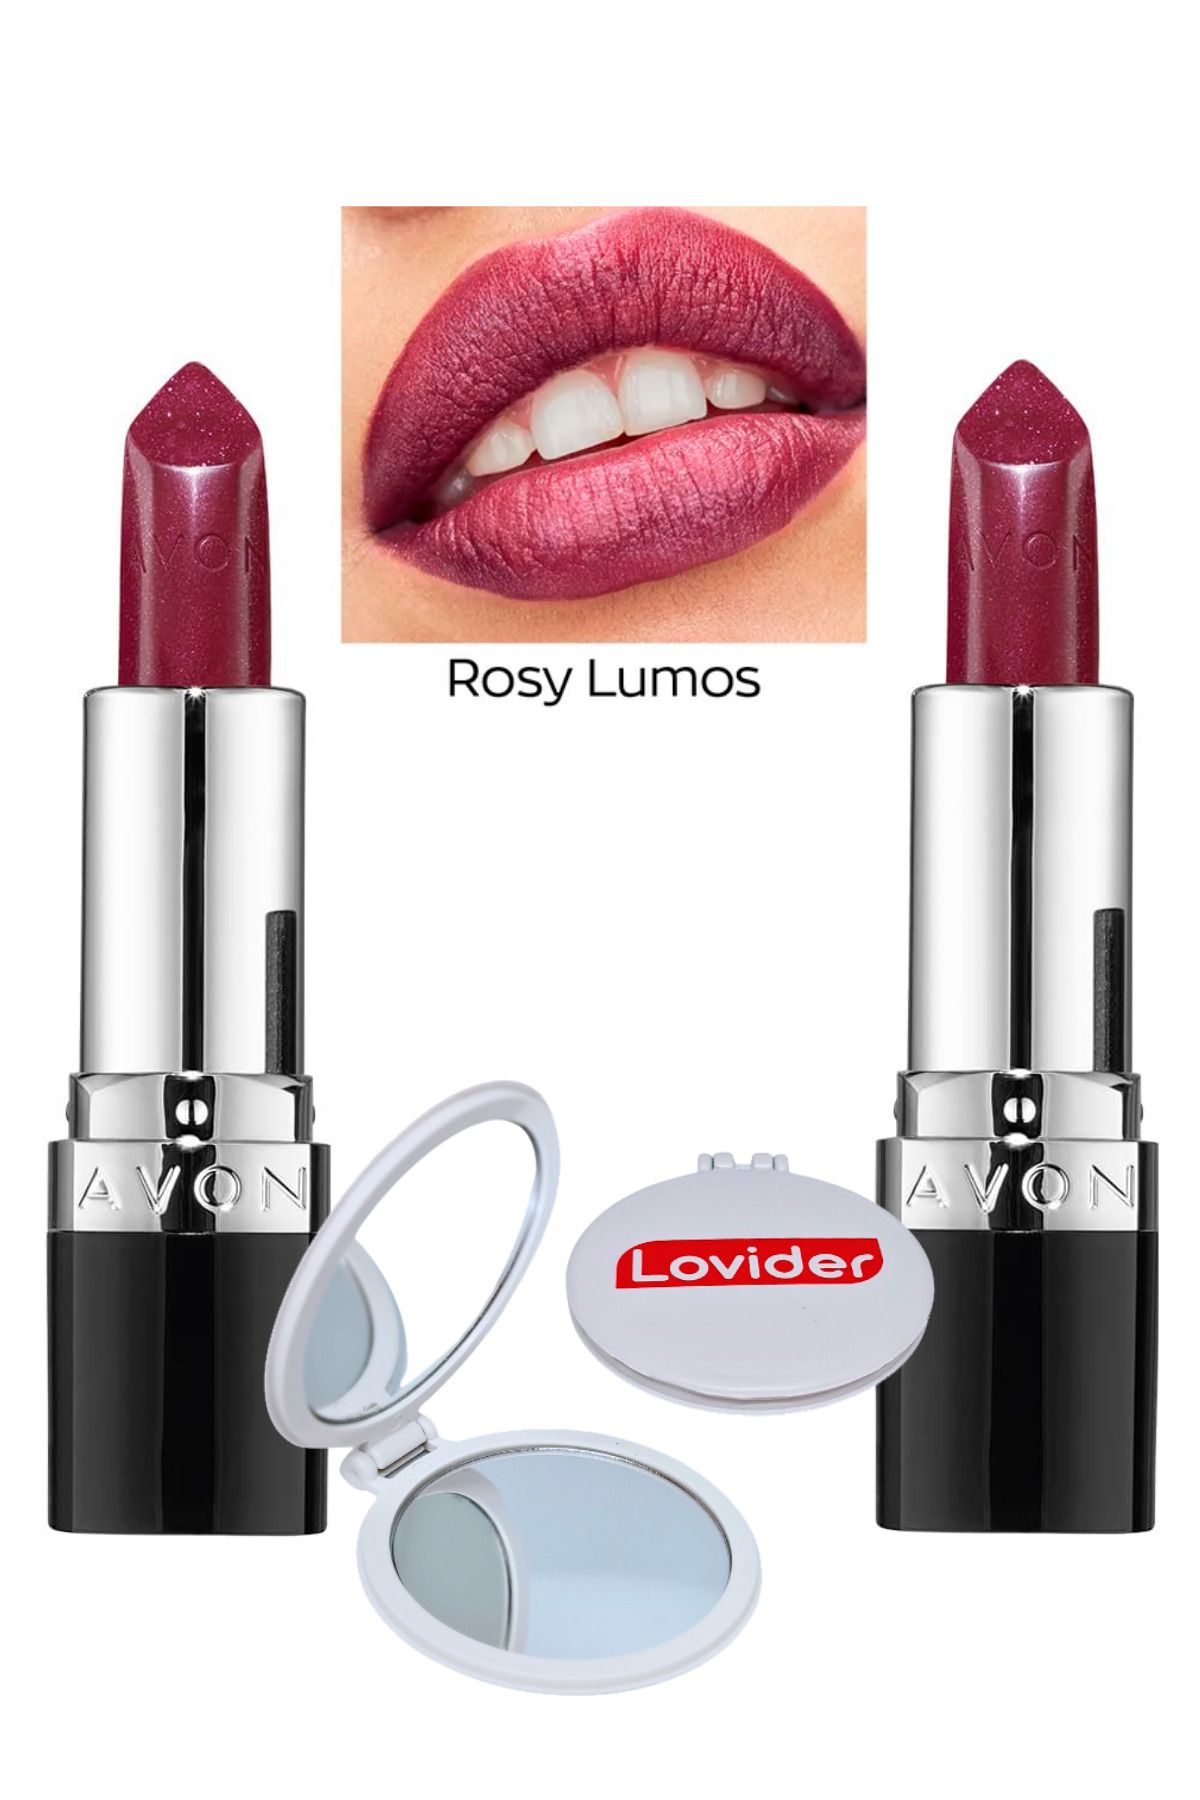 Avon Ultra Shimmer Pırıltılı Ruj Rosy Lumos 2'li + Lovider Cep Aynası Hediye